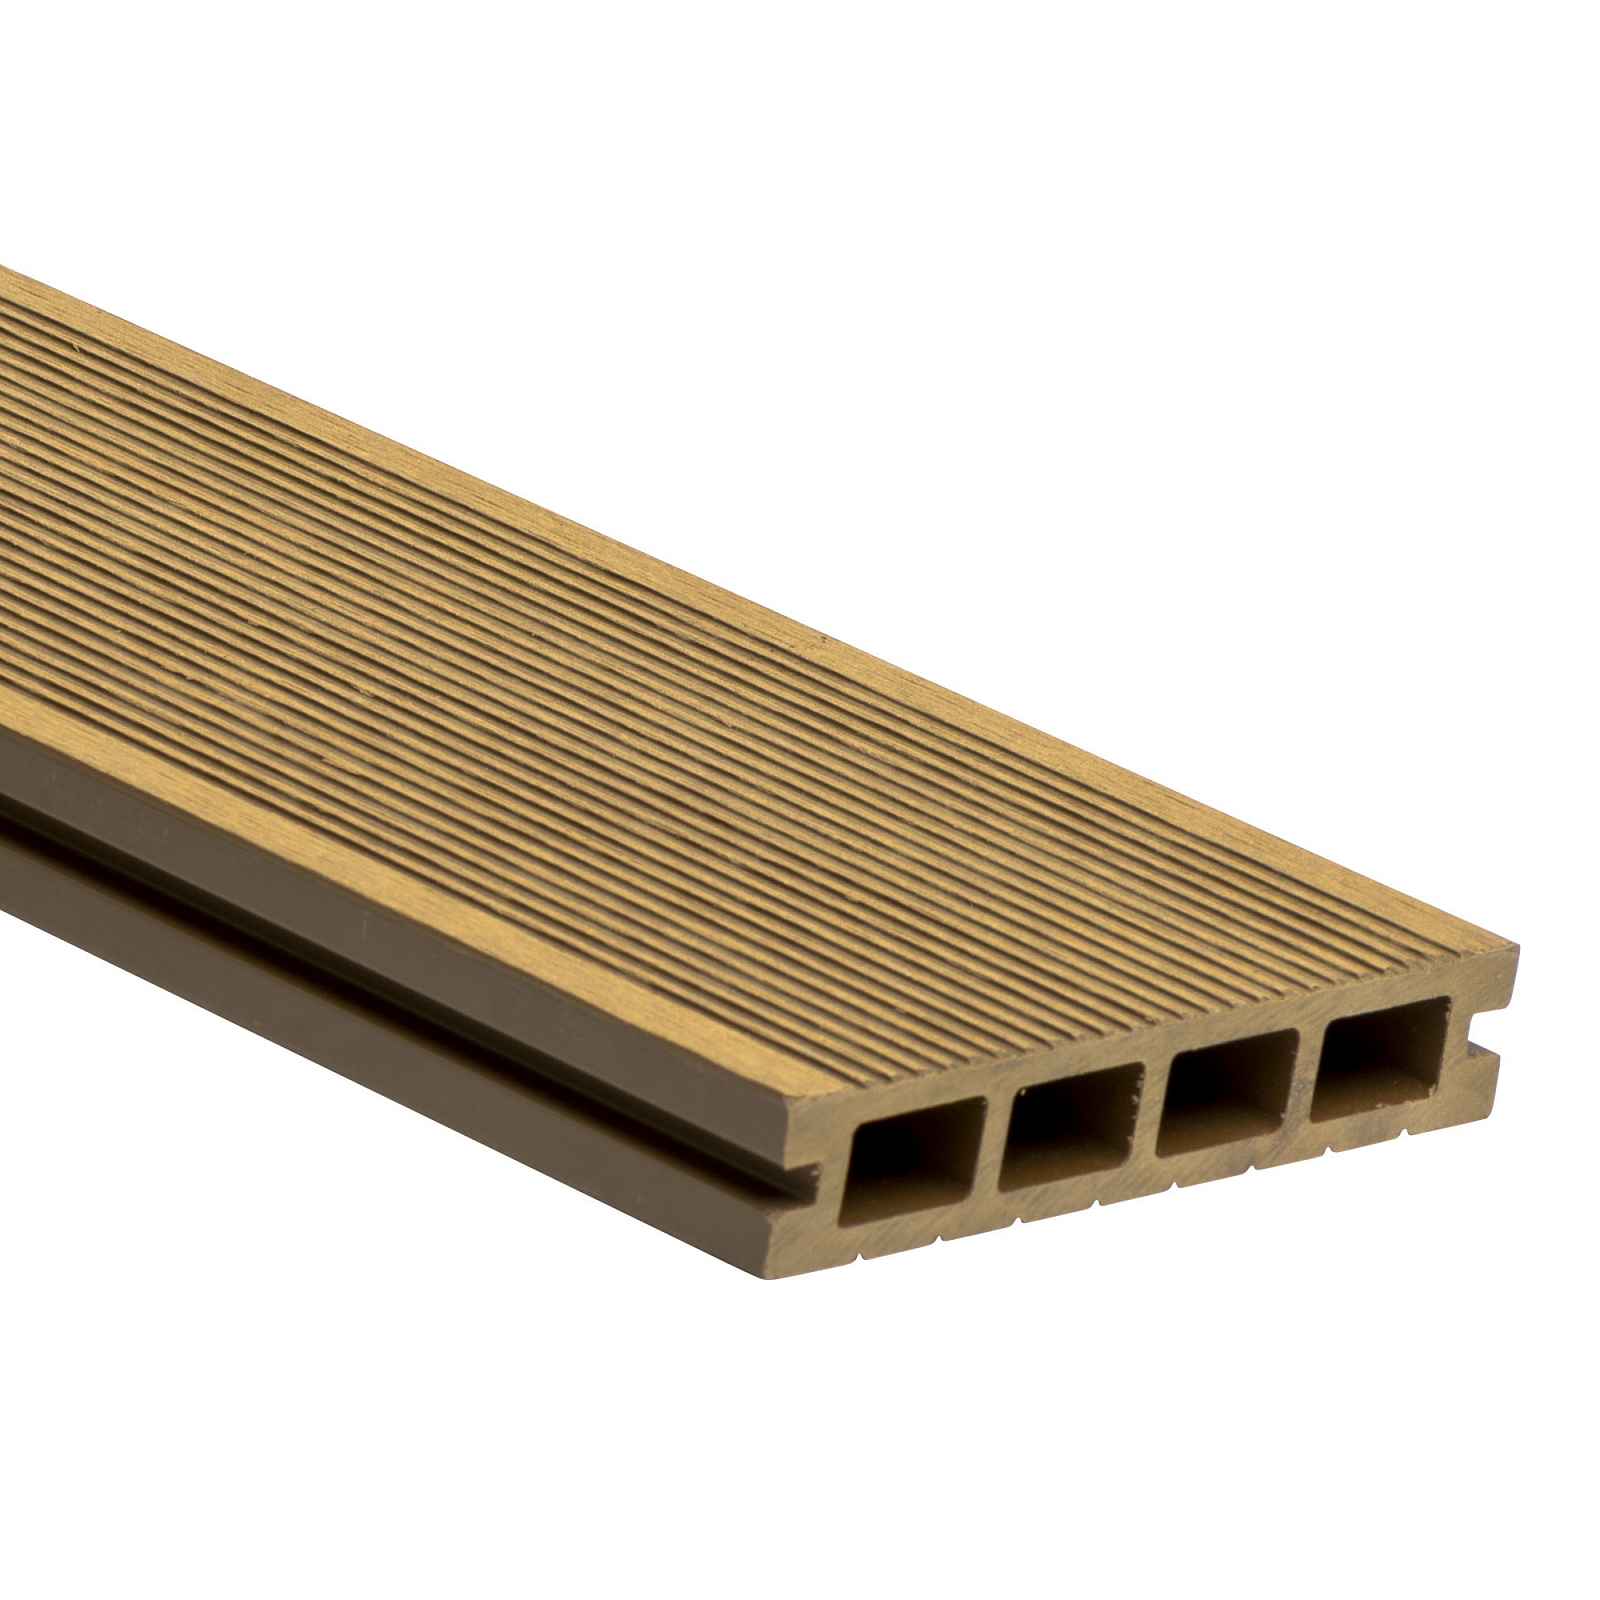 Prkno terasové dřevoplastové WPC PERI duté odstín original wood 140×25×2900 mm